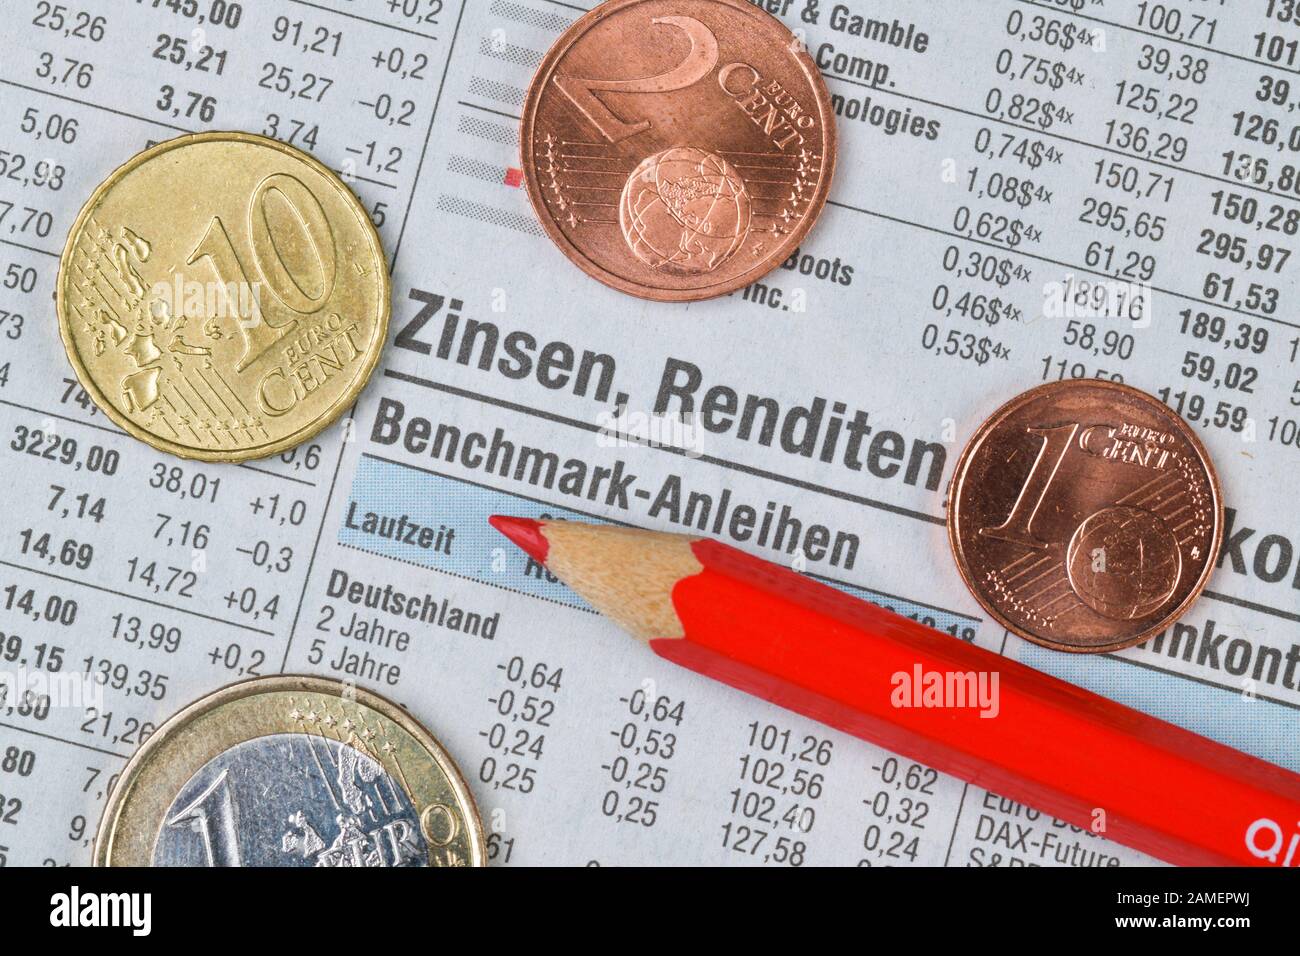 Zeitung, Börsenteil, Zinsen, Renditen Stock Photo